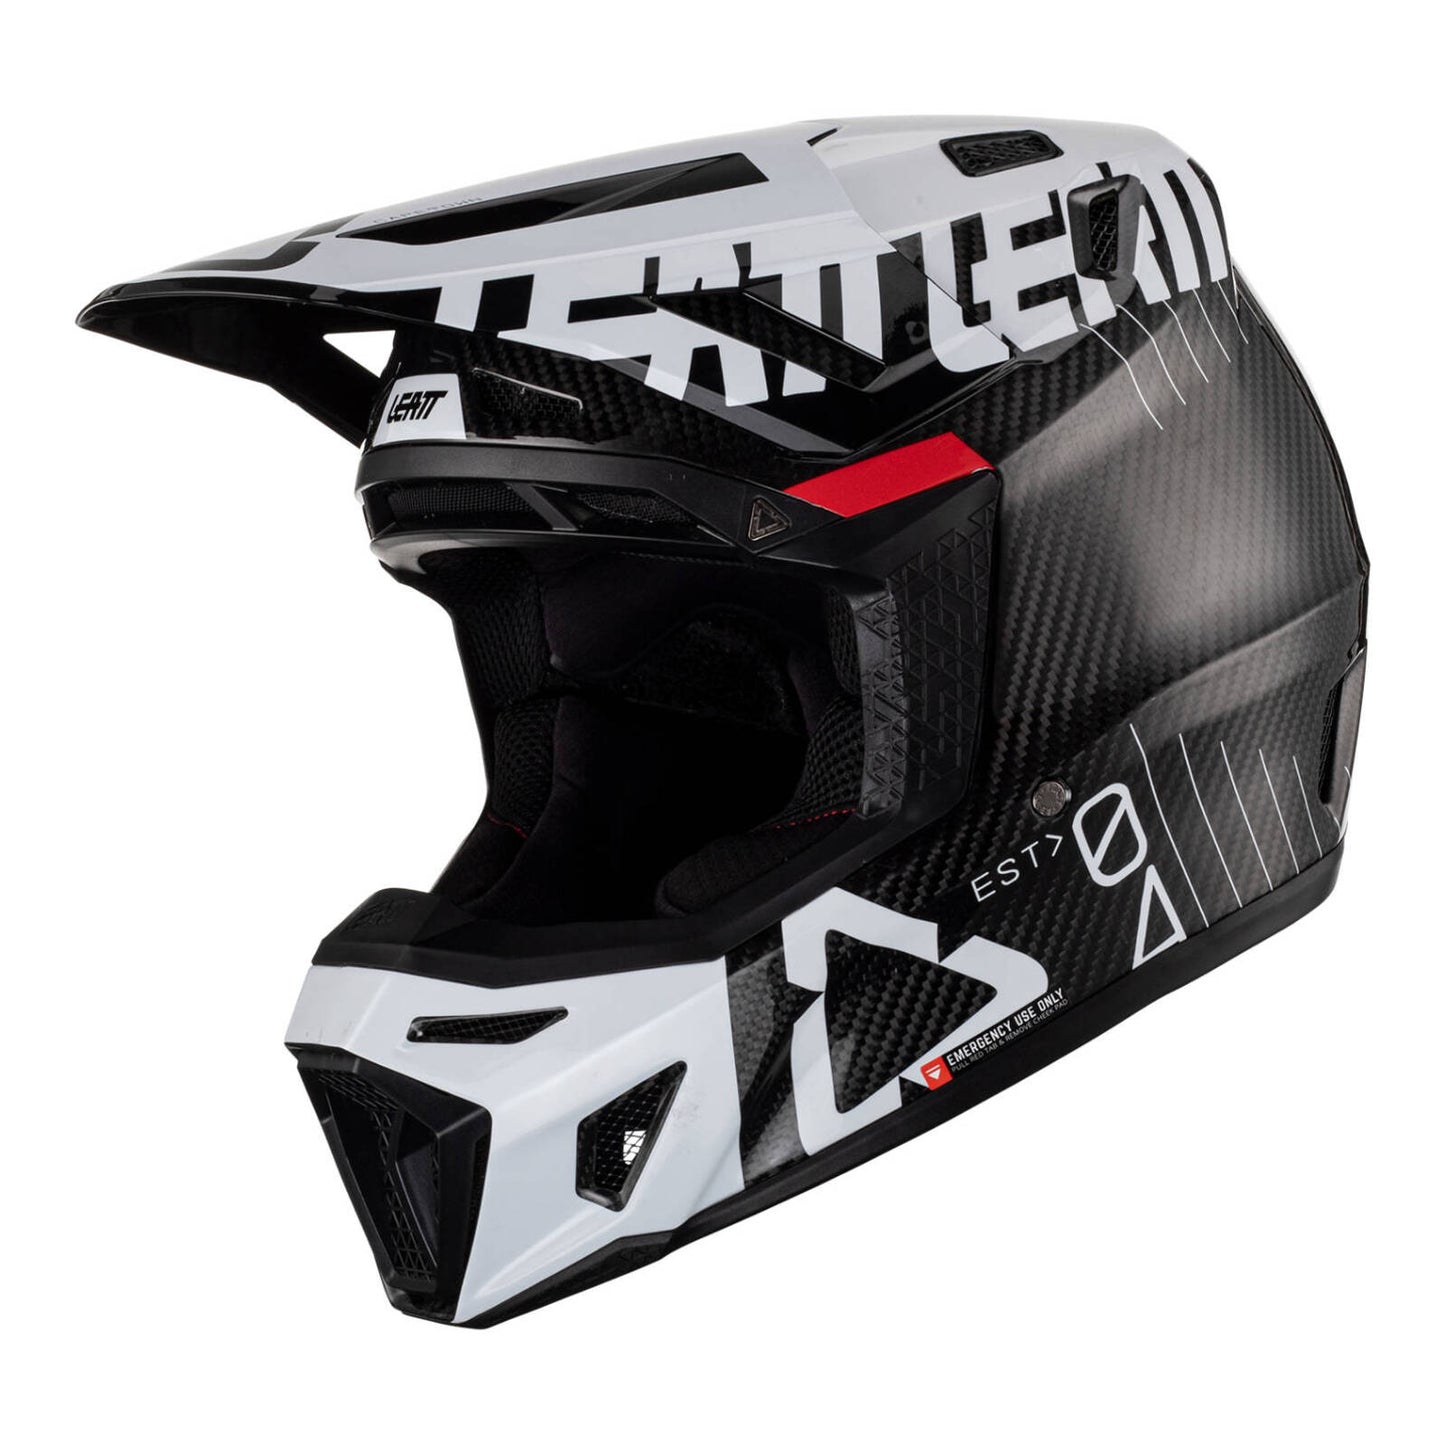 Leatt 9.5 Helmet & Goggle Kit - Carbon / White